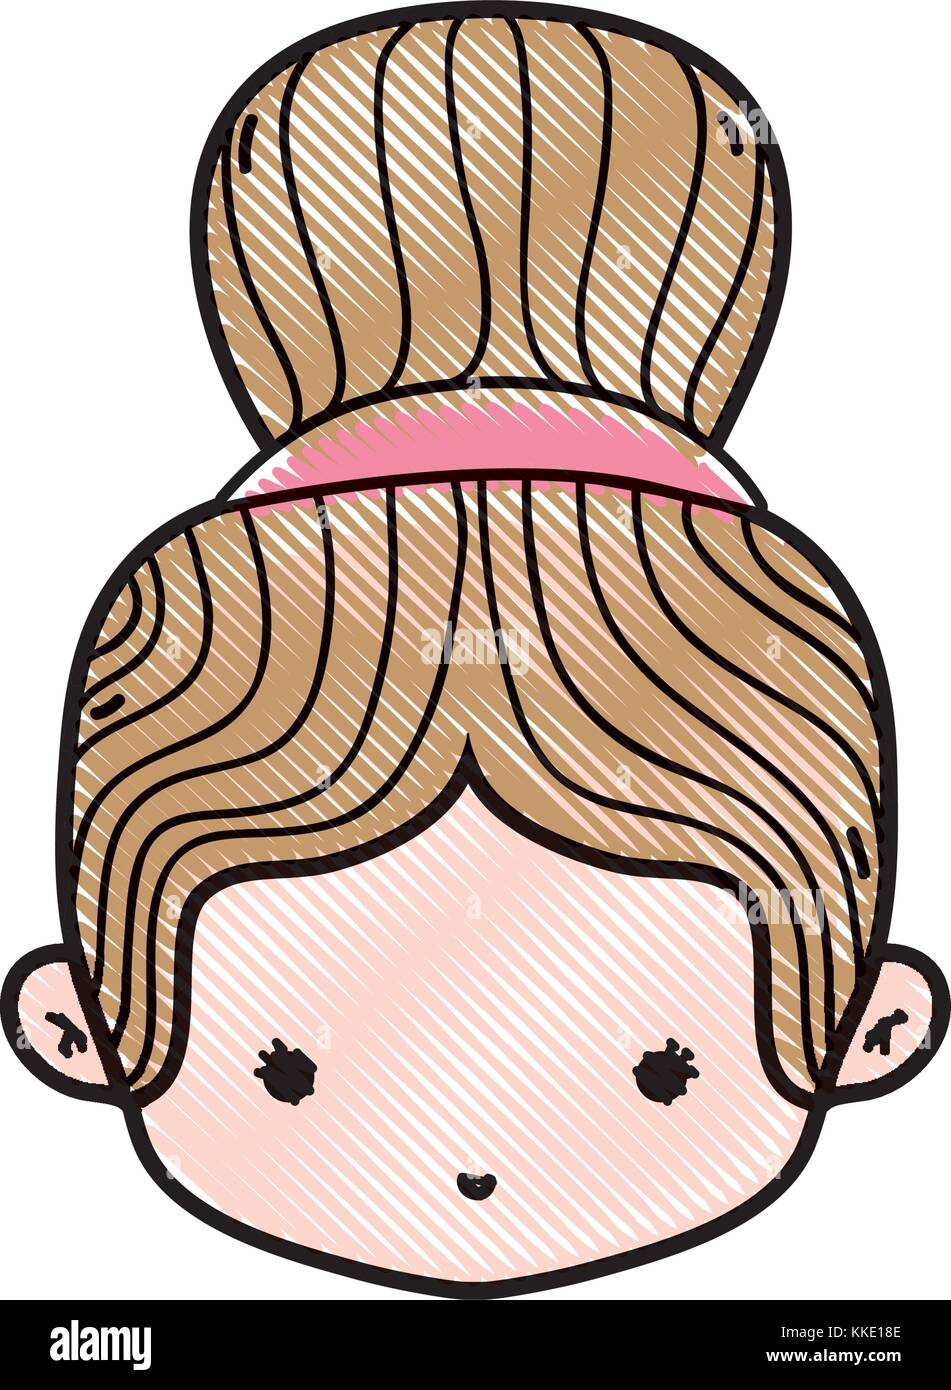 Ragazza grattugiato testa con bun disegno dei capelli Immagine e Vettoriale  - Alamy